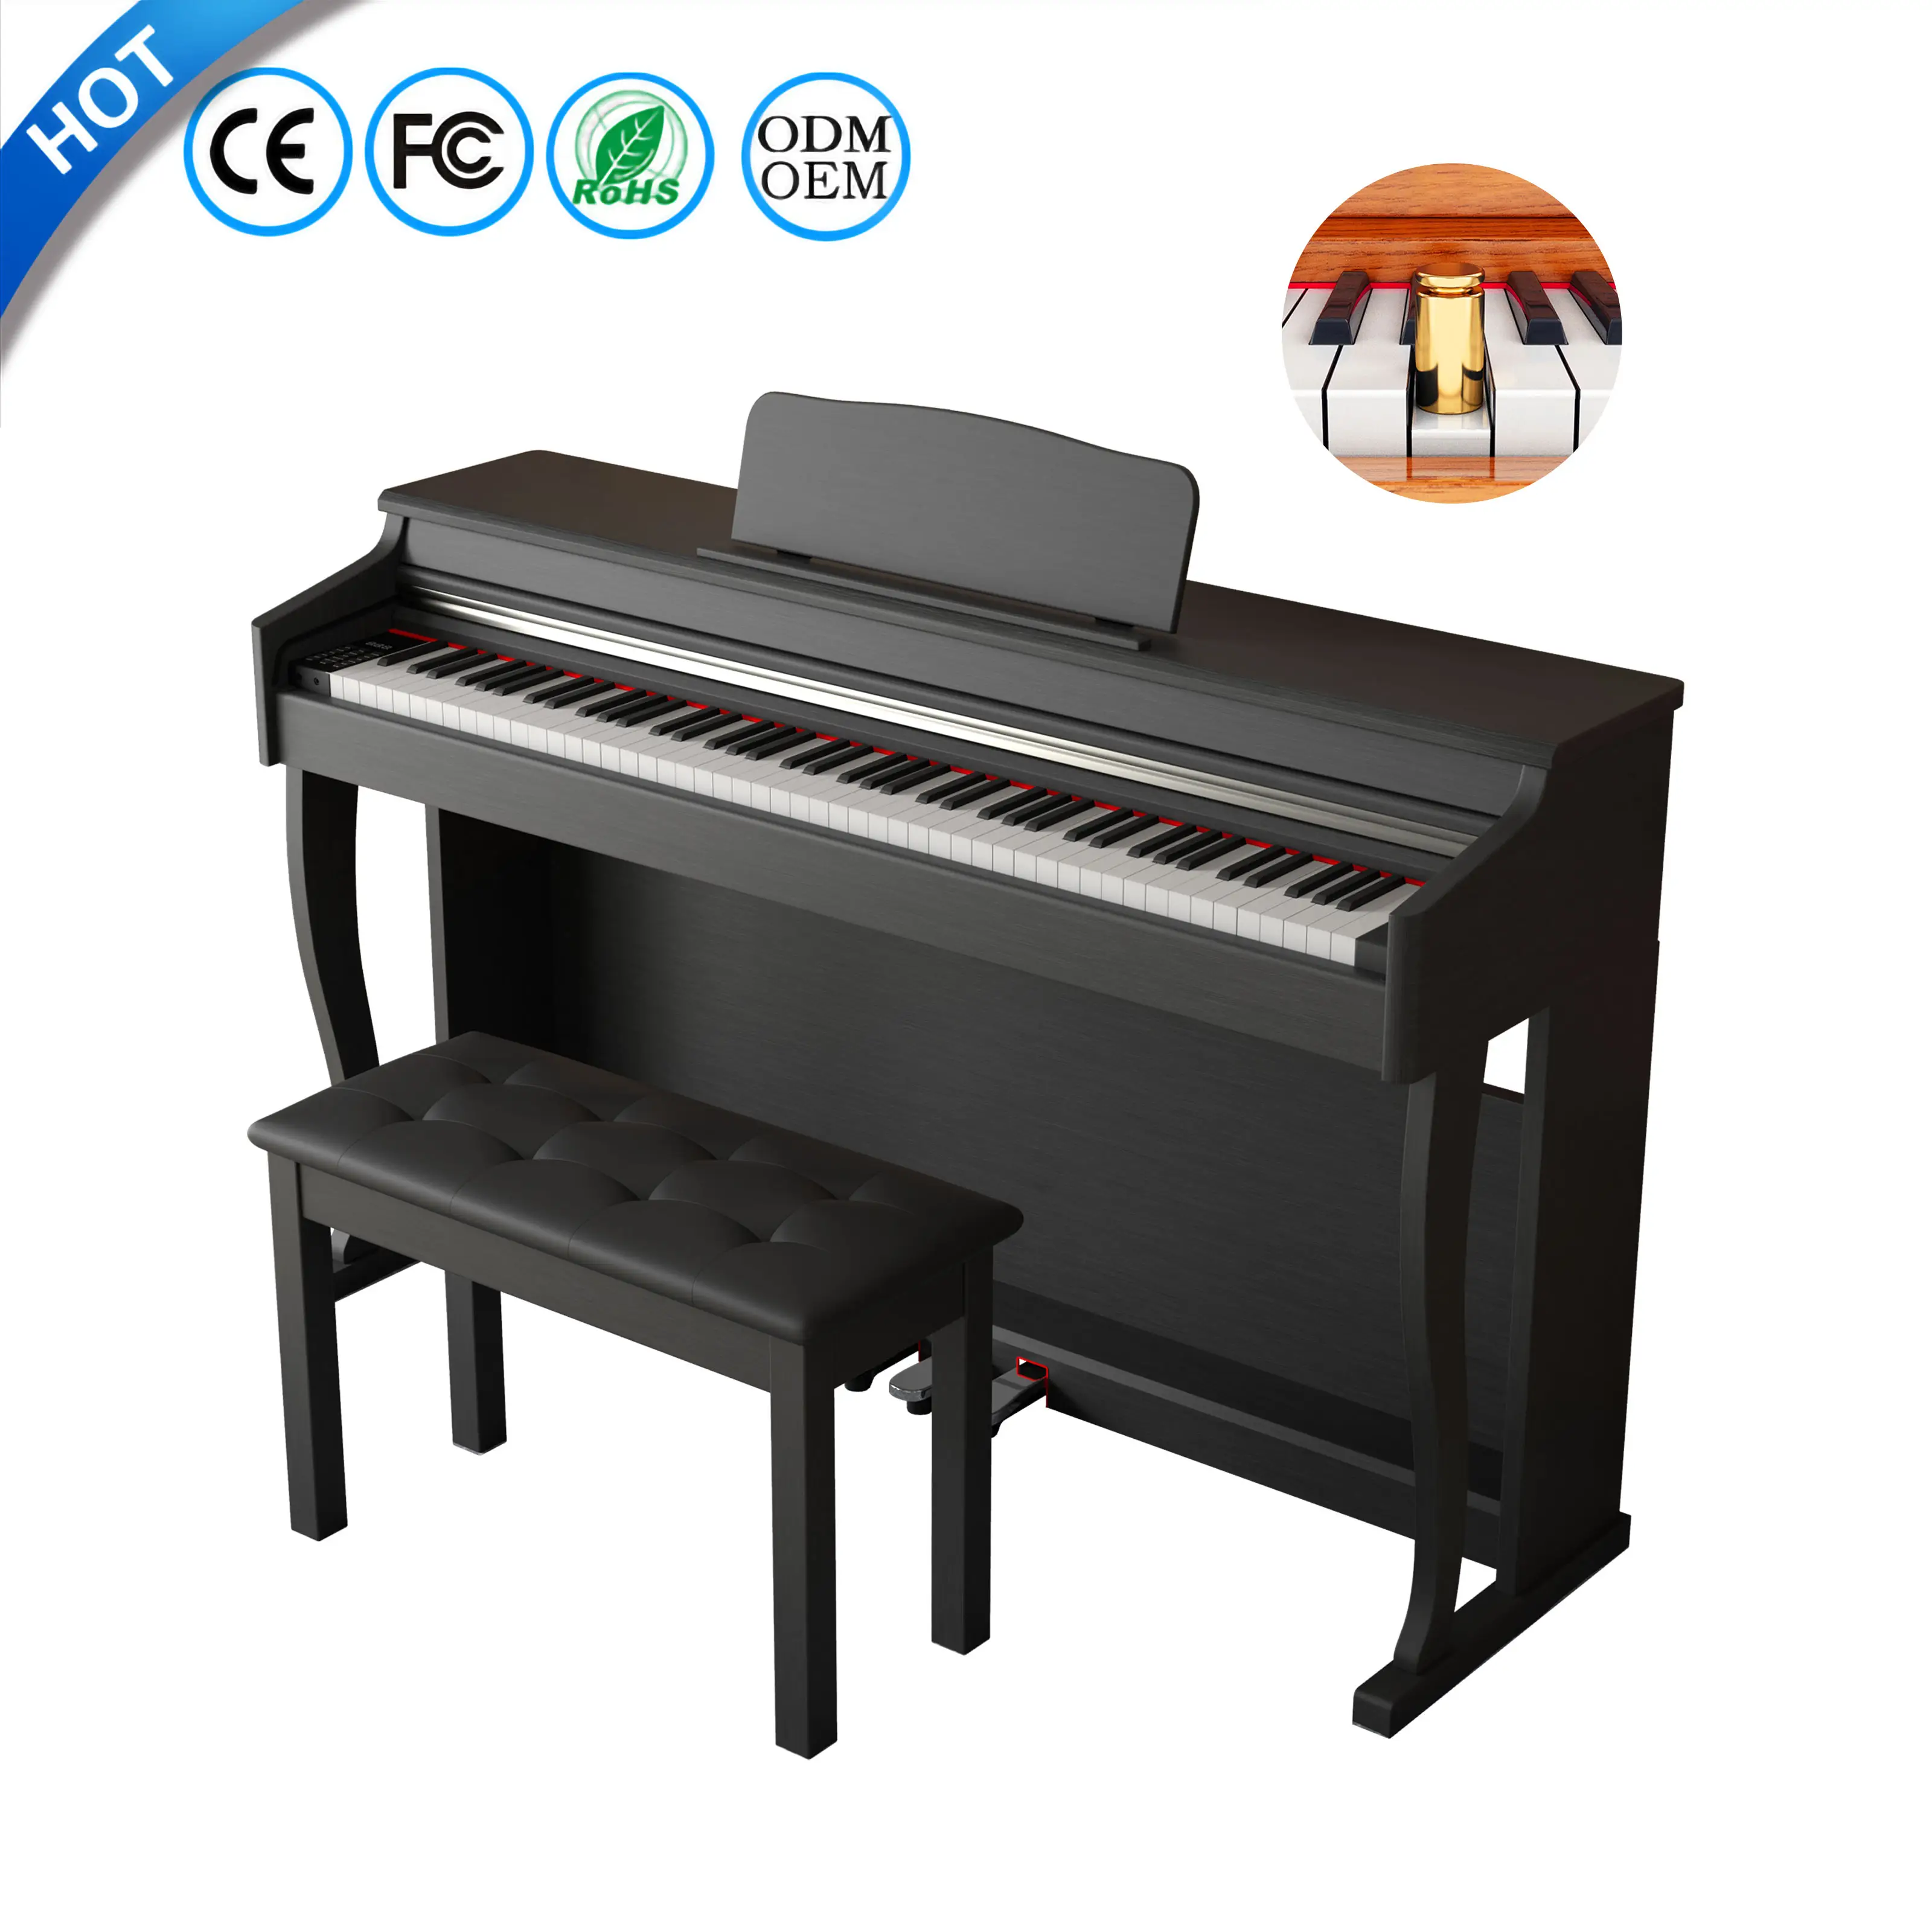 لوحة مفاتيح للبيانو بسعر مخفض لوحة مفاتيح بيانو رقمية خشبية صينية 88 مفتاح